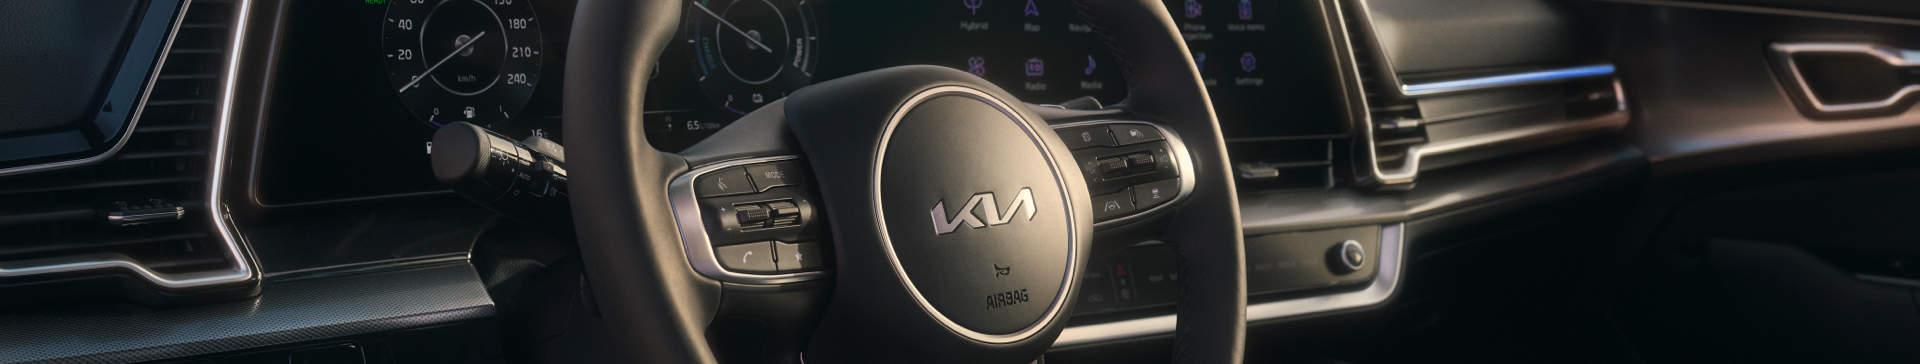 Image clé Kia Drive Wise avec logo